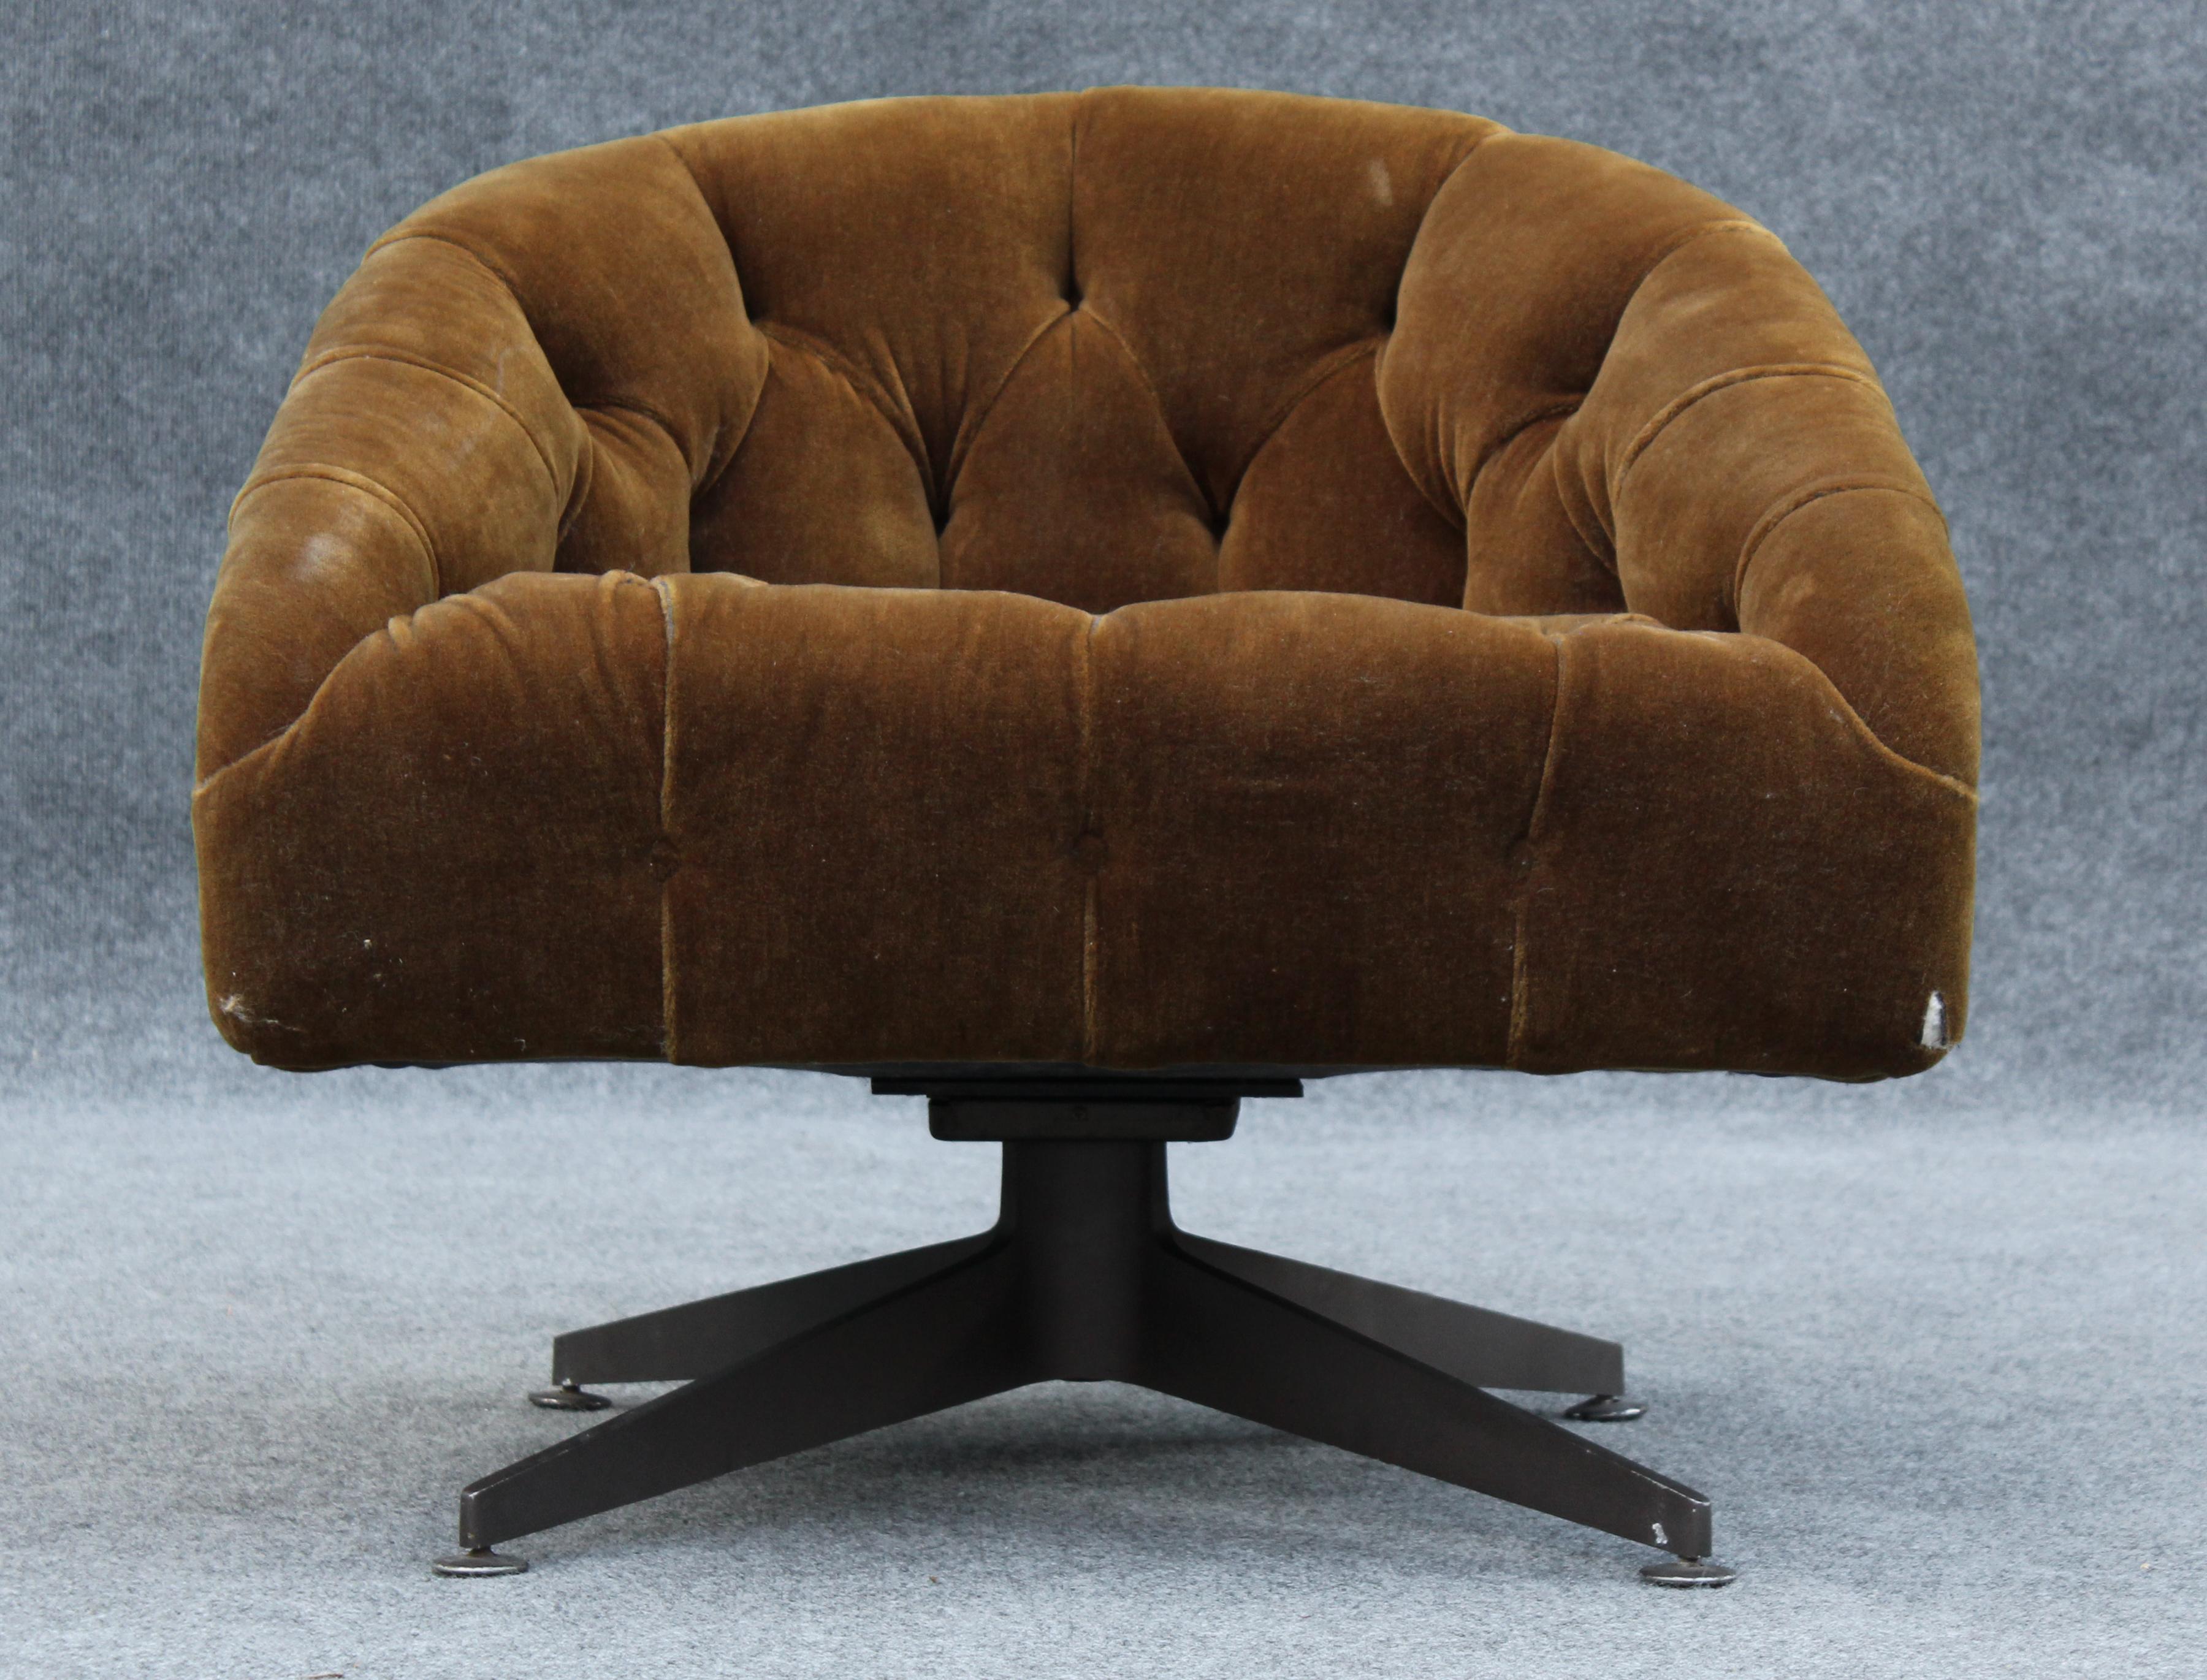 Créée par le légendaire designer américain Ward Bennett, cette chaise longue pivotante a été produite par le fabricant Lehigh Leopold, le fabricant de choix pour d'autres icônes du design telles que Warren Platner. Avec sa sellerie mohair d'origine,